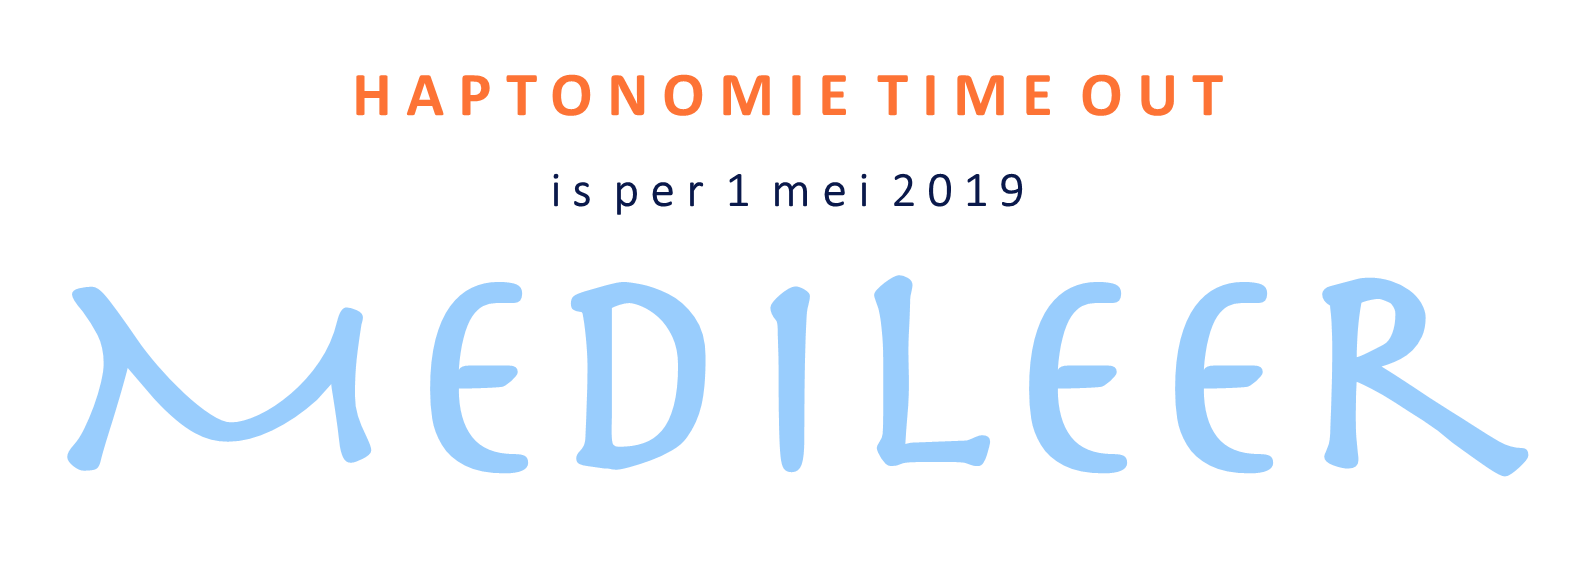 (c) Haptonomie-time-out.nl